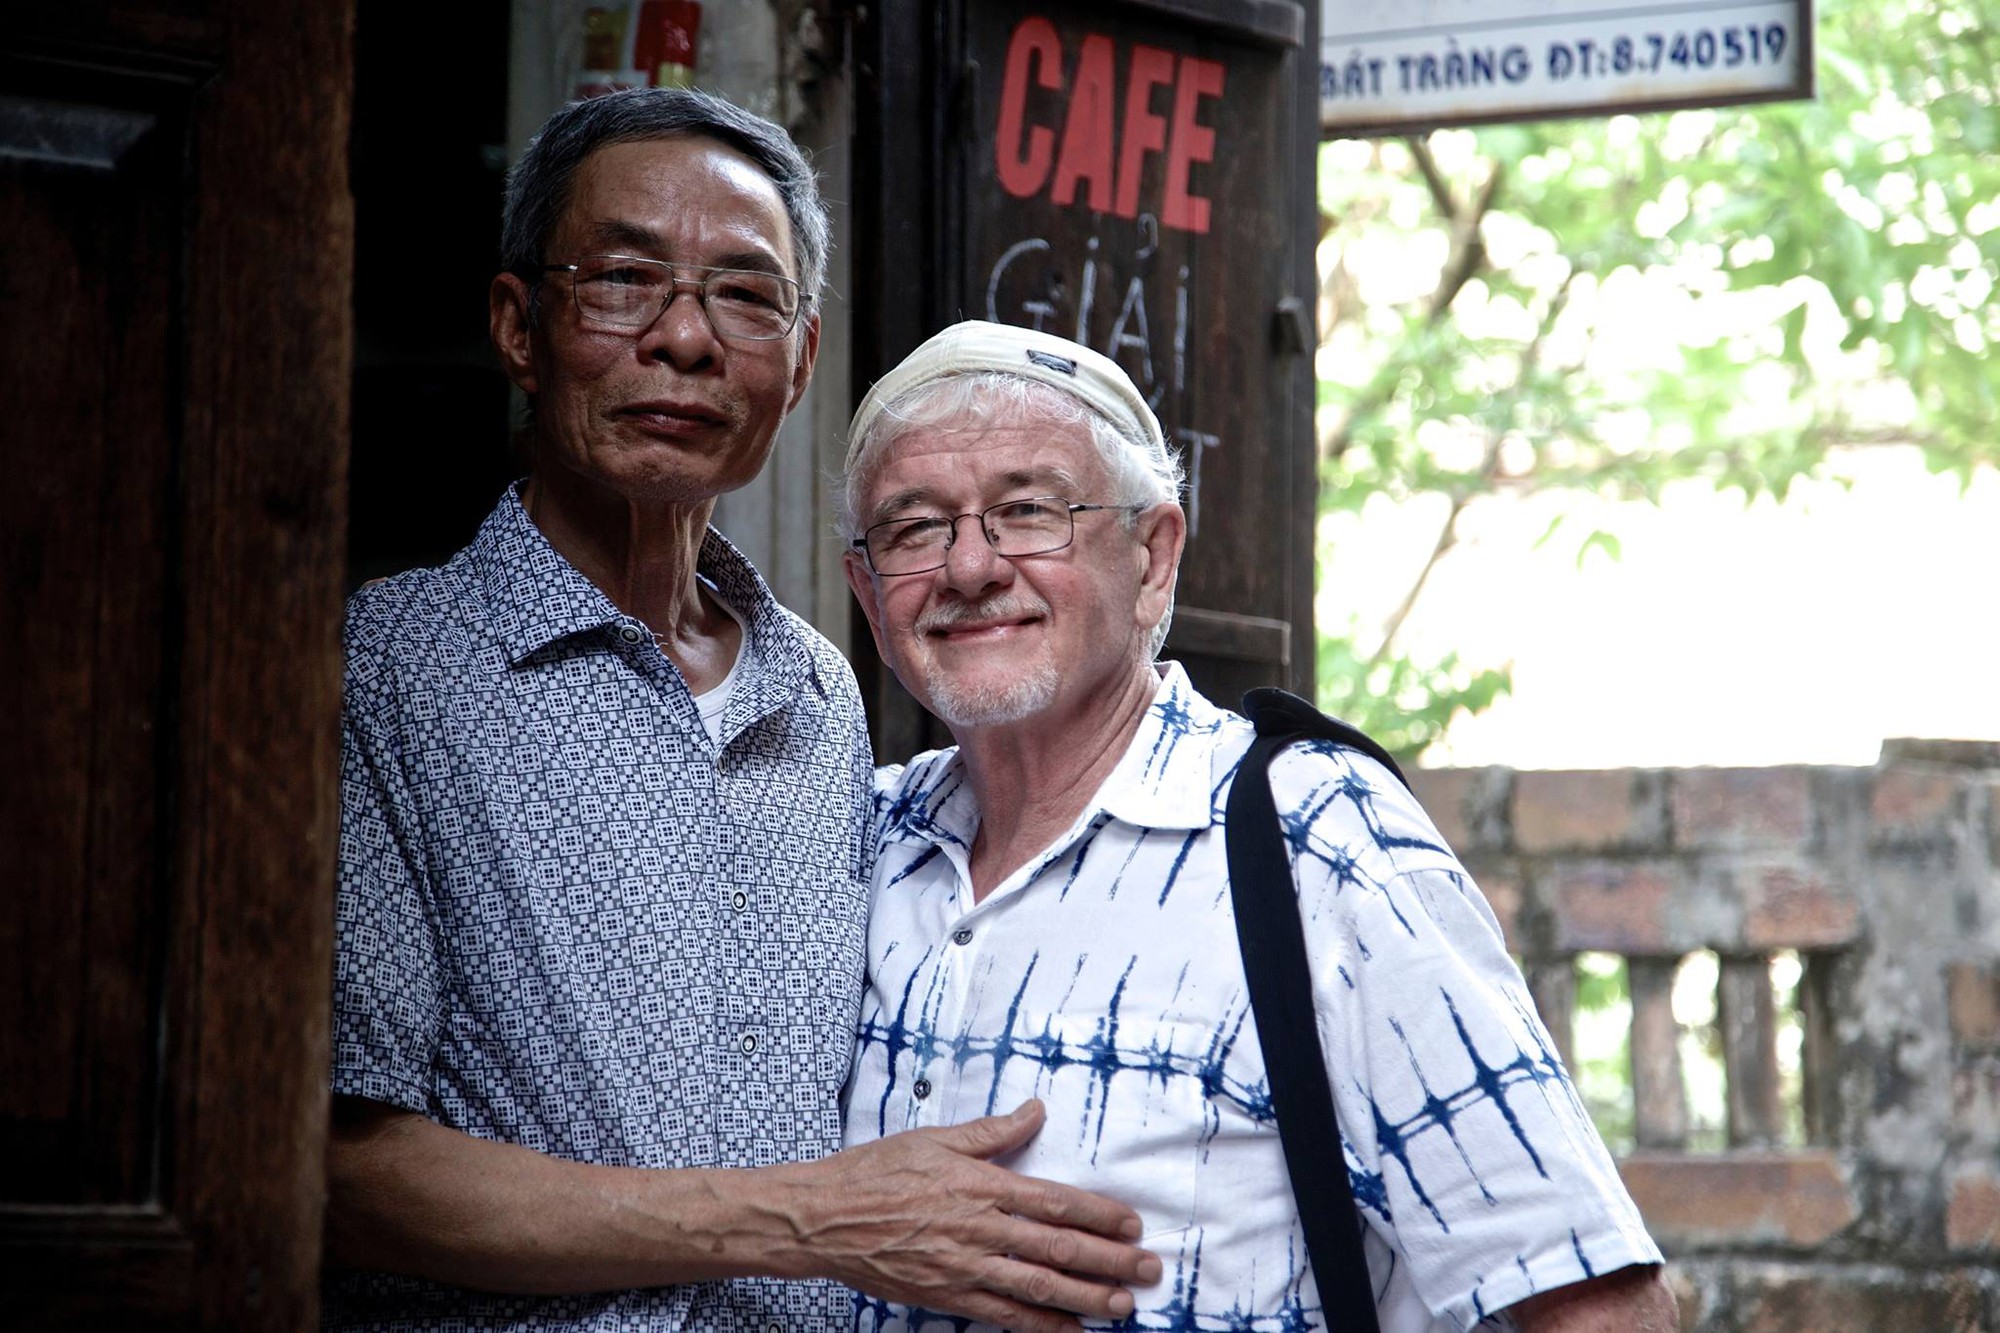 Ký ức Hà Nội: Cuộc gặp gỡ xúc động giữa cựu binh Mỹ và ông chủ quán cà phê Việt Nam - Ảnh 1.